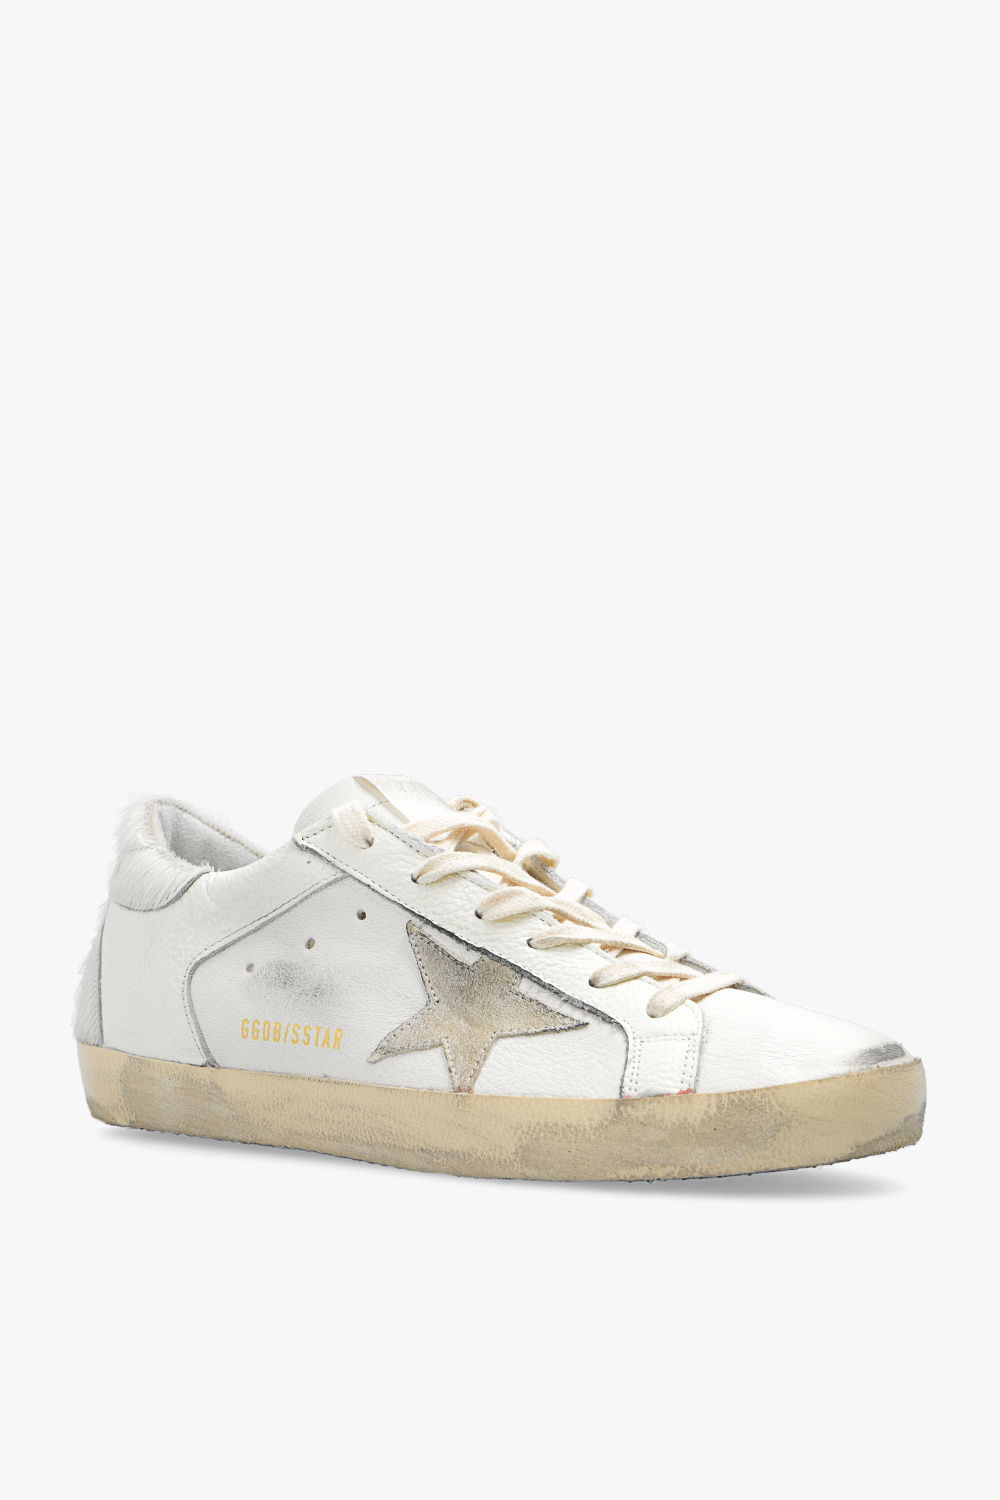 Golden Goose ‘Super-Star’ sneakers